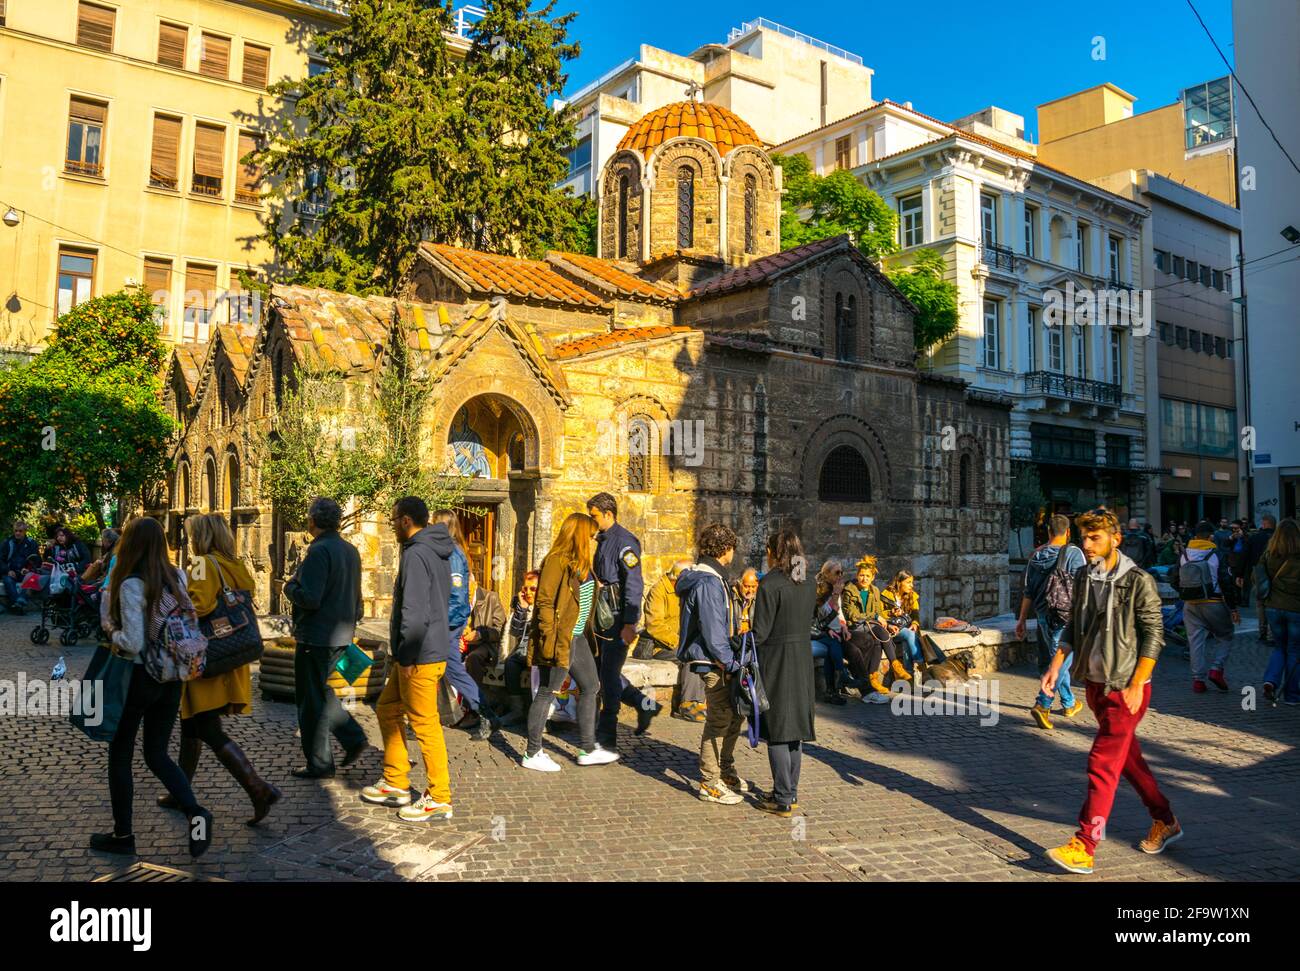 ATENE, GRECIA, 10 DICEMBRE 2015: La gente passa per la Chiesa di Panagia Kapnikarea, un'antica chiesa di Atene, Grecia Foto Stock